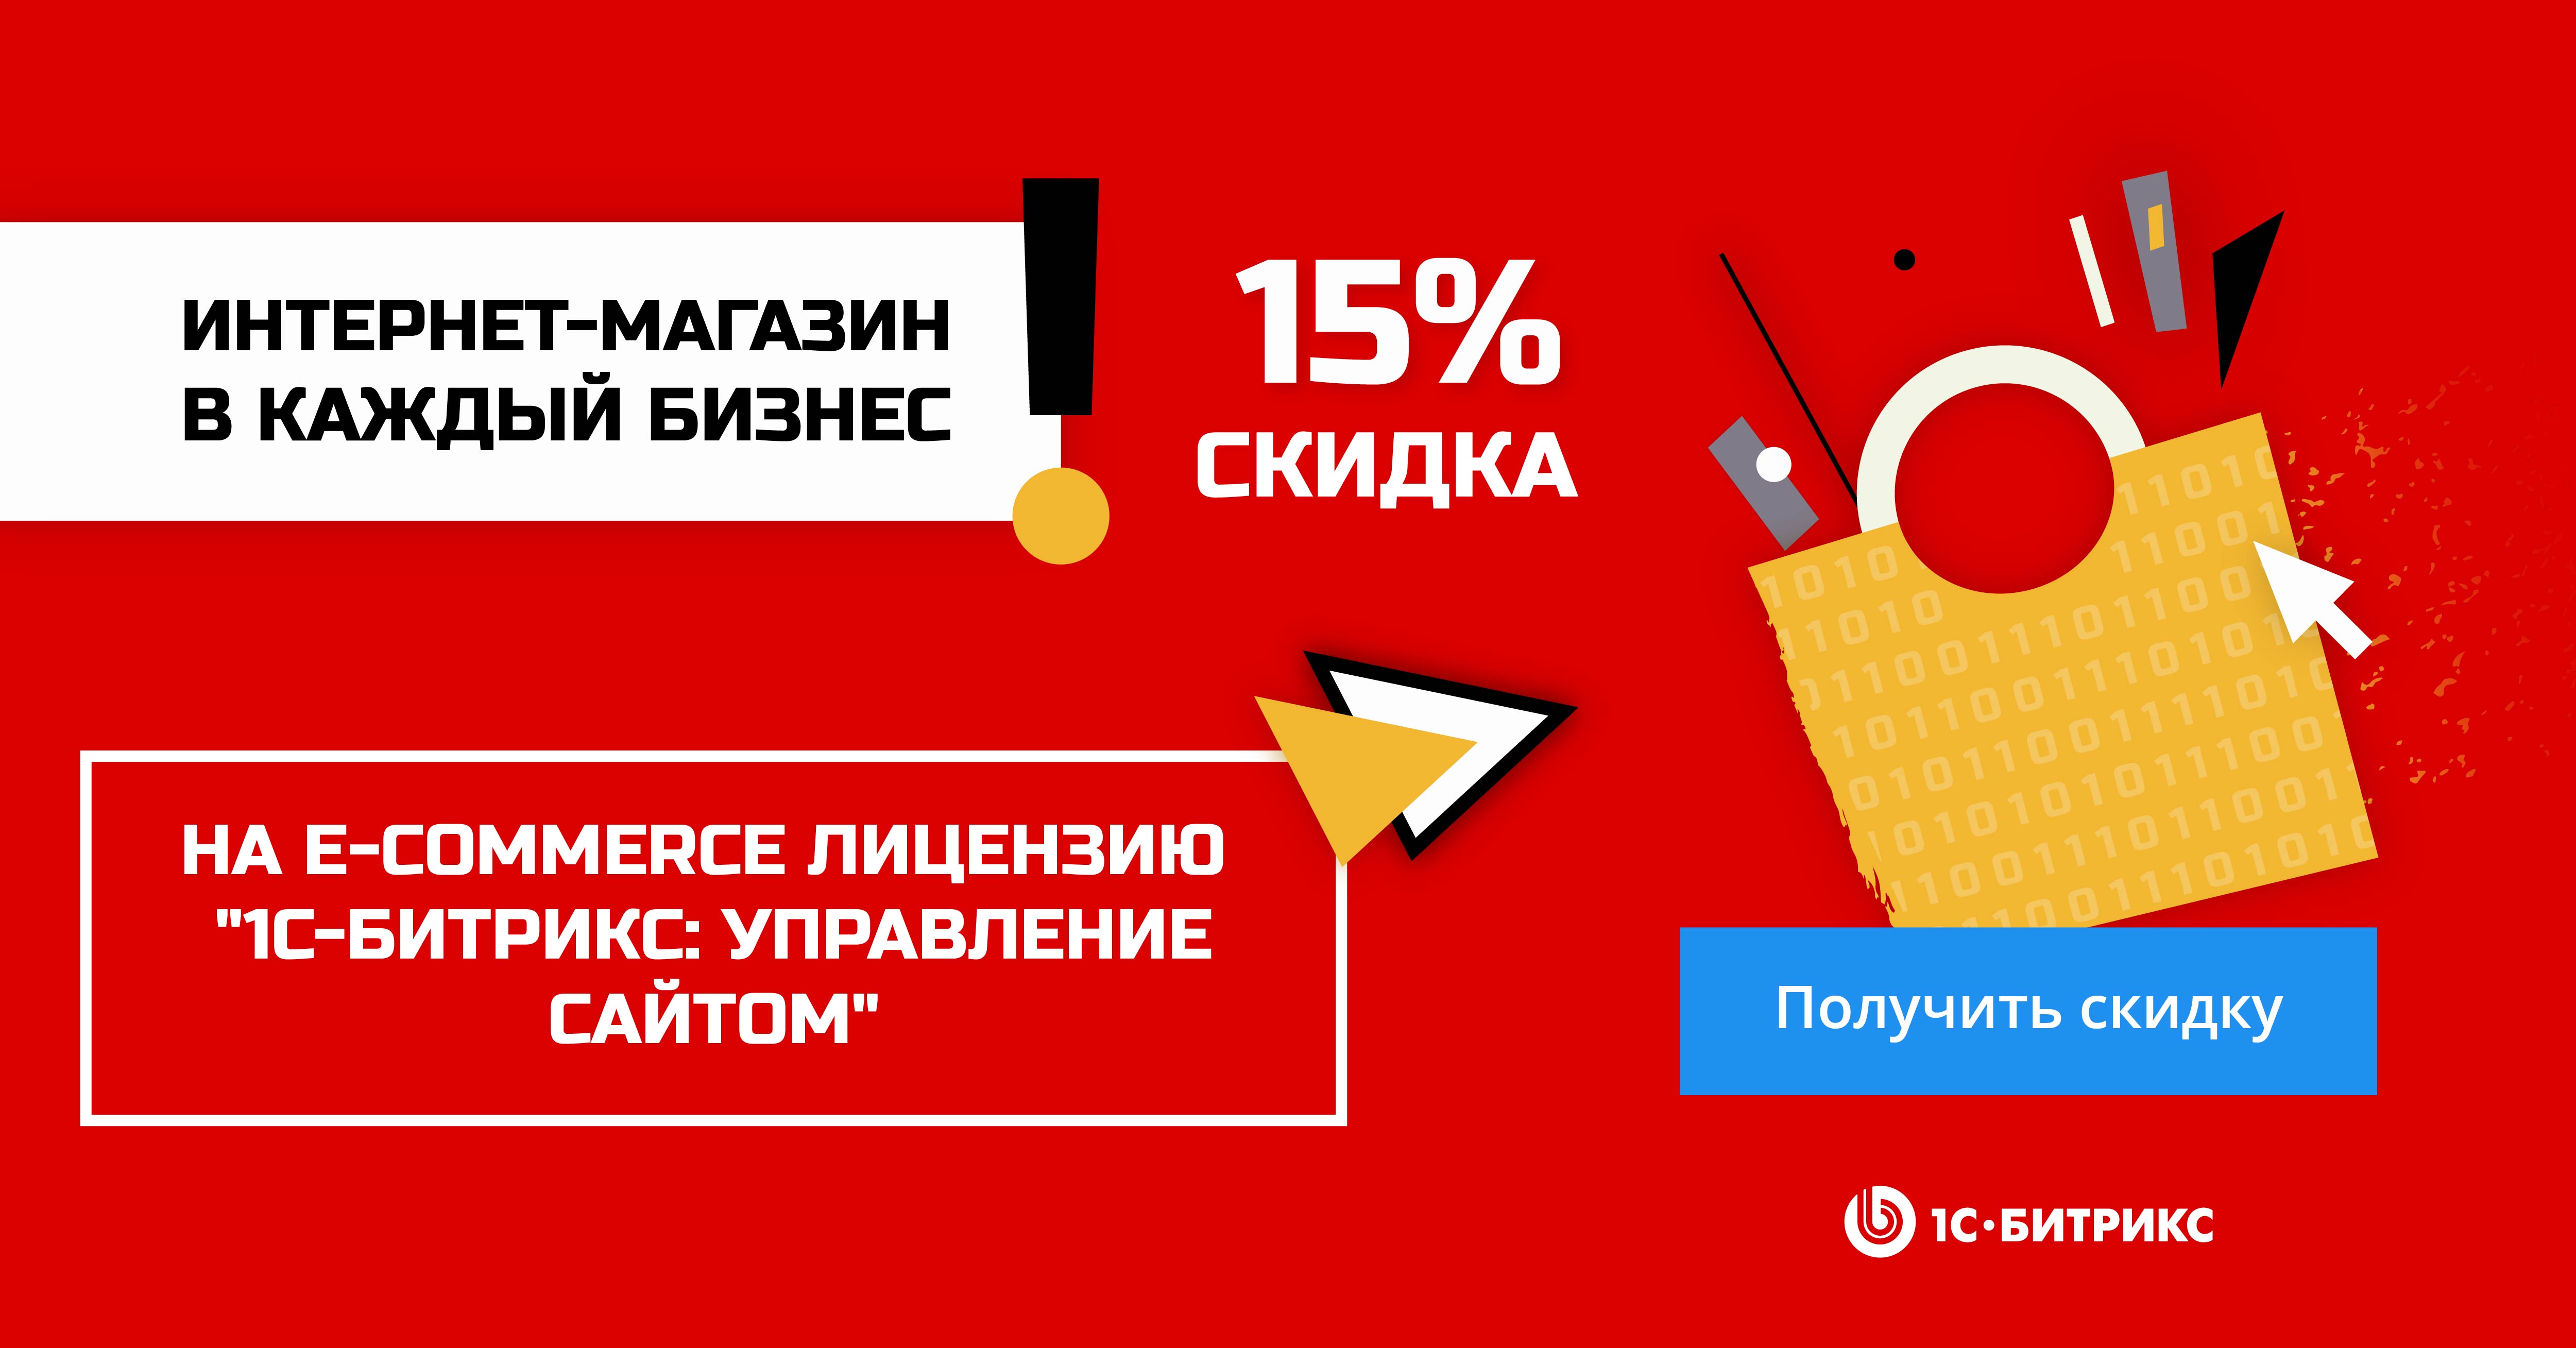 Акция «Интернет-магазин – в каждый бизнес»: скидки 15% и 25%.